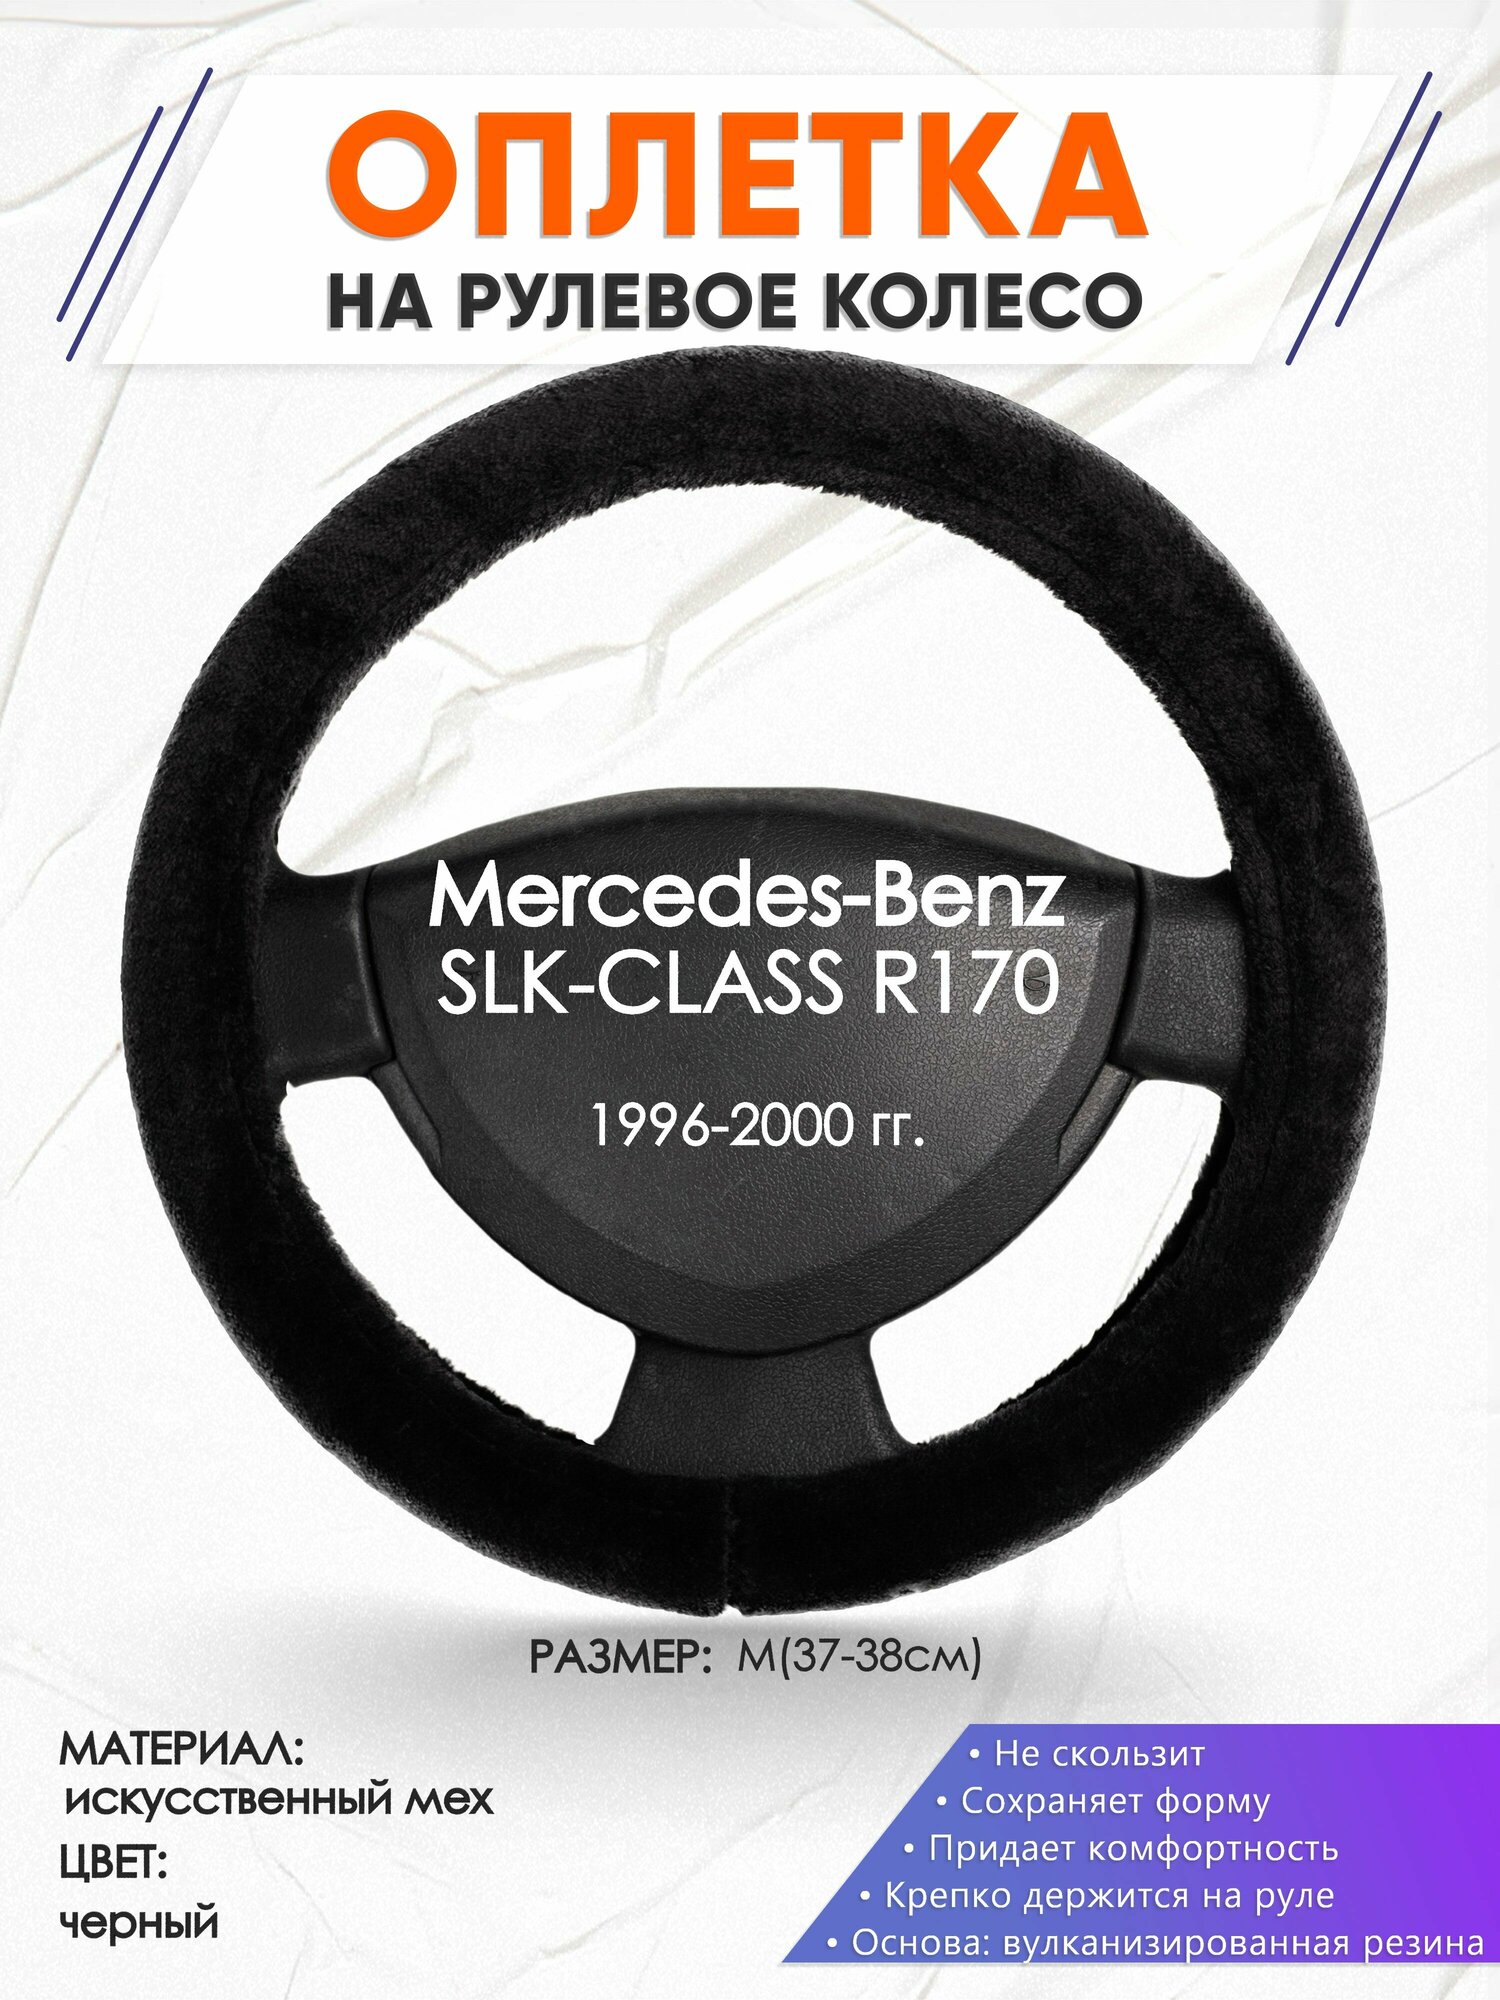 Оплетка наруль для Mercedes-Benz SLK-CLASS R170(Мерседес Бенц ) 1996-2000 годов выпуска, размер M(37-38см), Искусственный мех 45